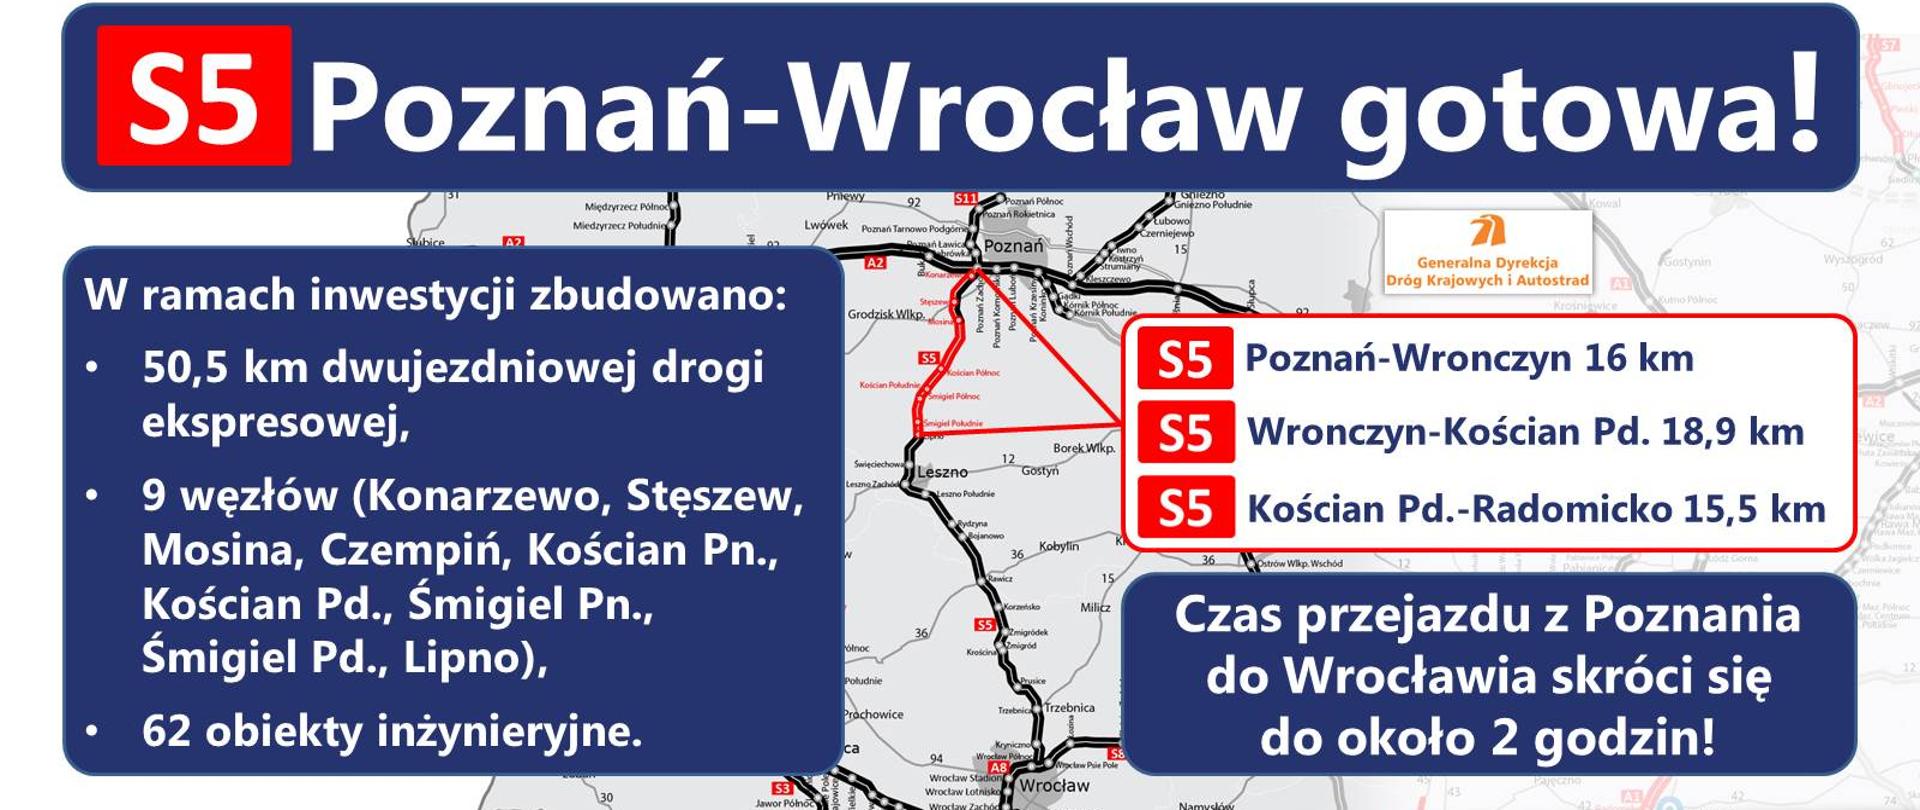 Obraz przedstawia trasę drogi S5 w województwie wielkopolskim